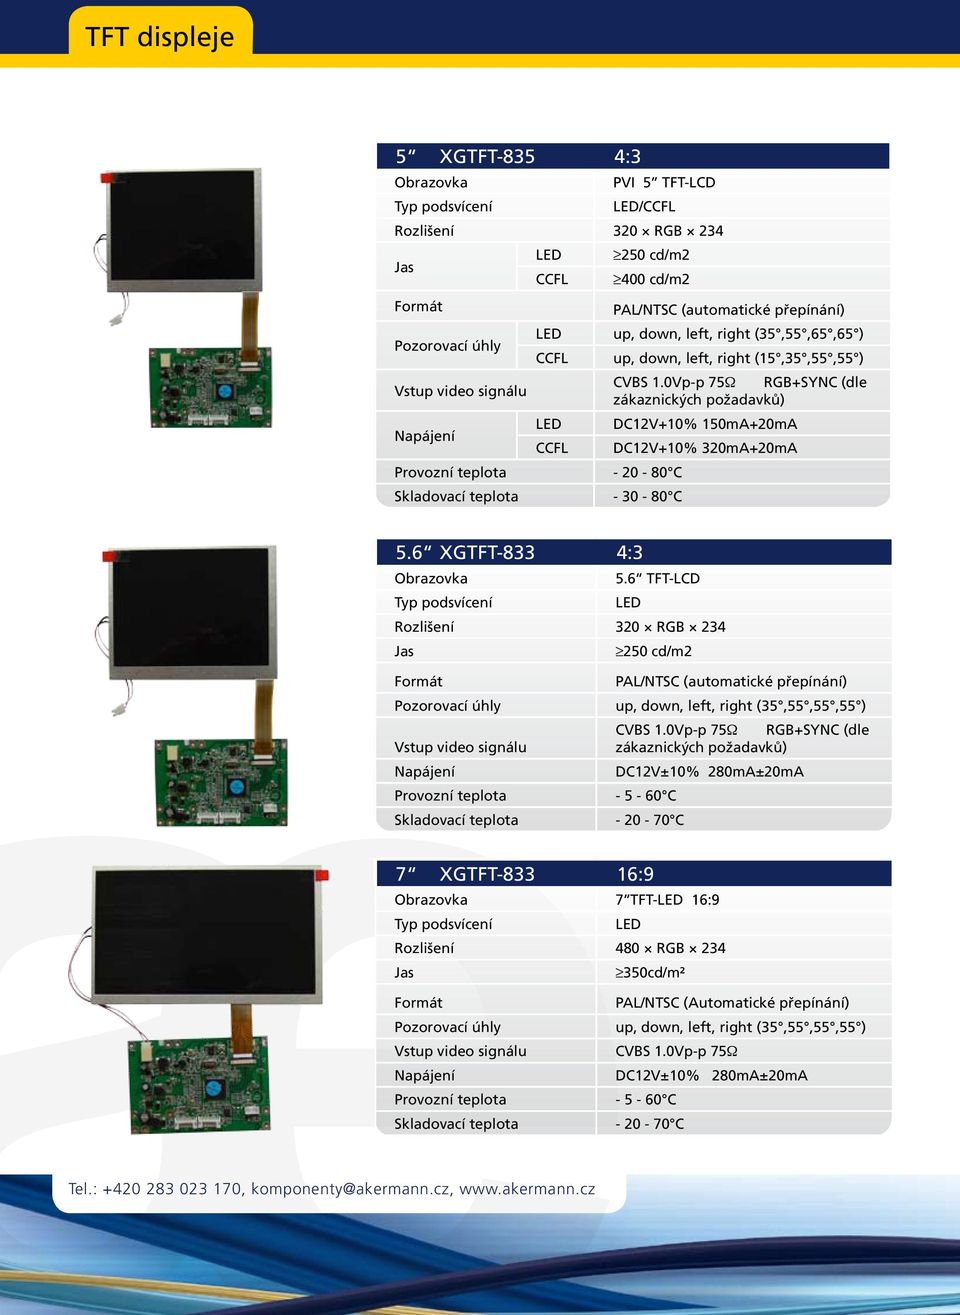 6 XGTFT-833 4:3 Obrazovka 5.6 TFT-LCD Rozlišení 320 RGB 234 250 cd/m2 PAL/NTSC (automatické přepínání) Pozorovací úhly up, down, left, right (35,55,55,55 ) CVBS 1.